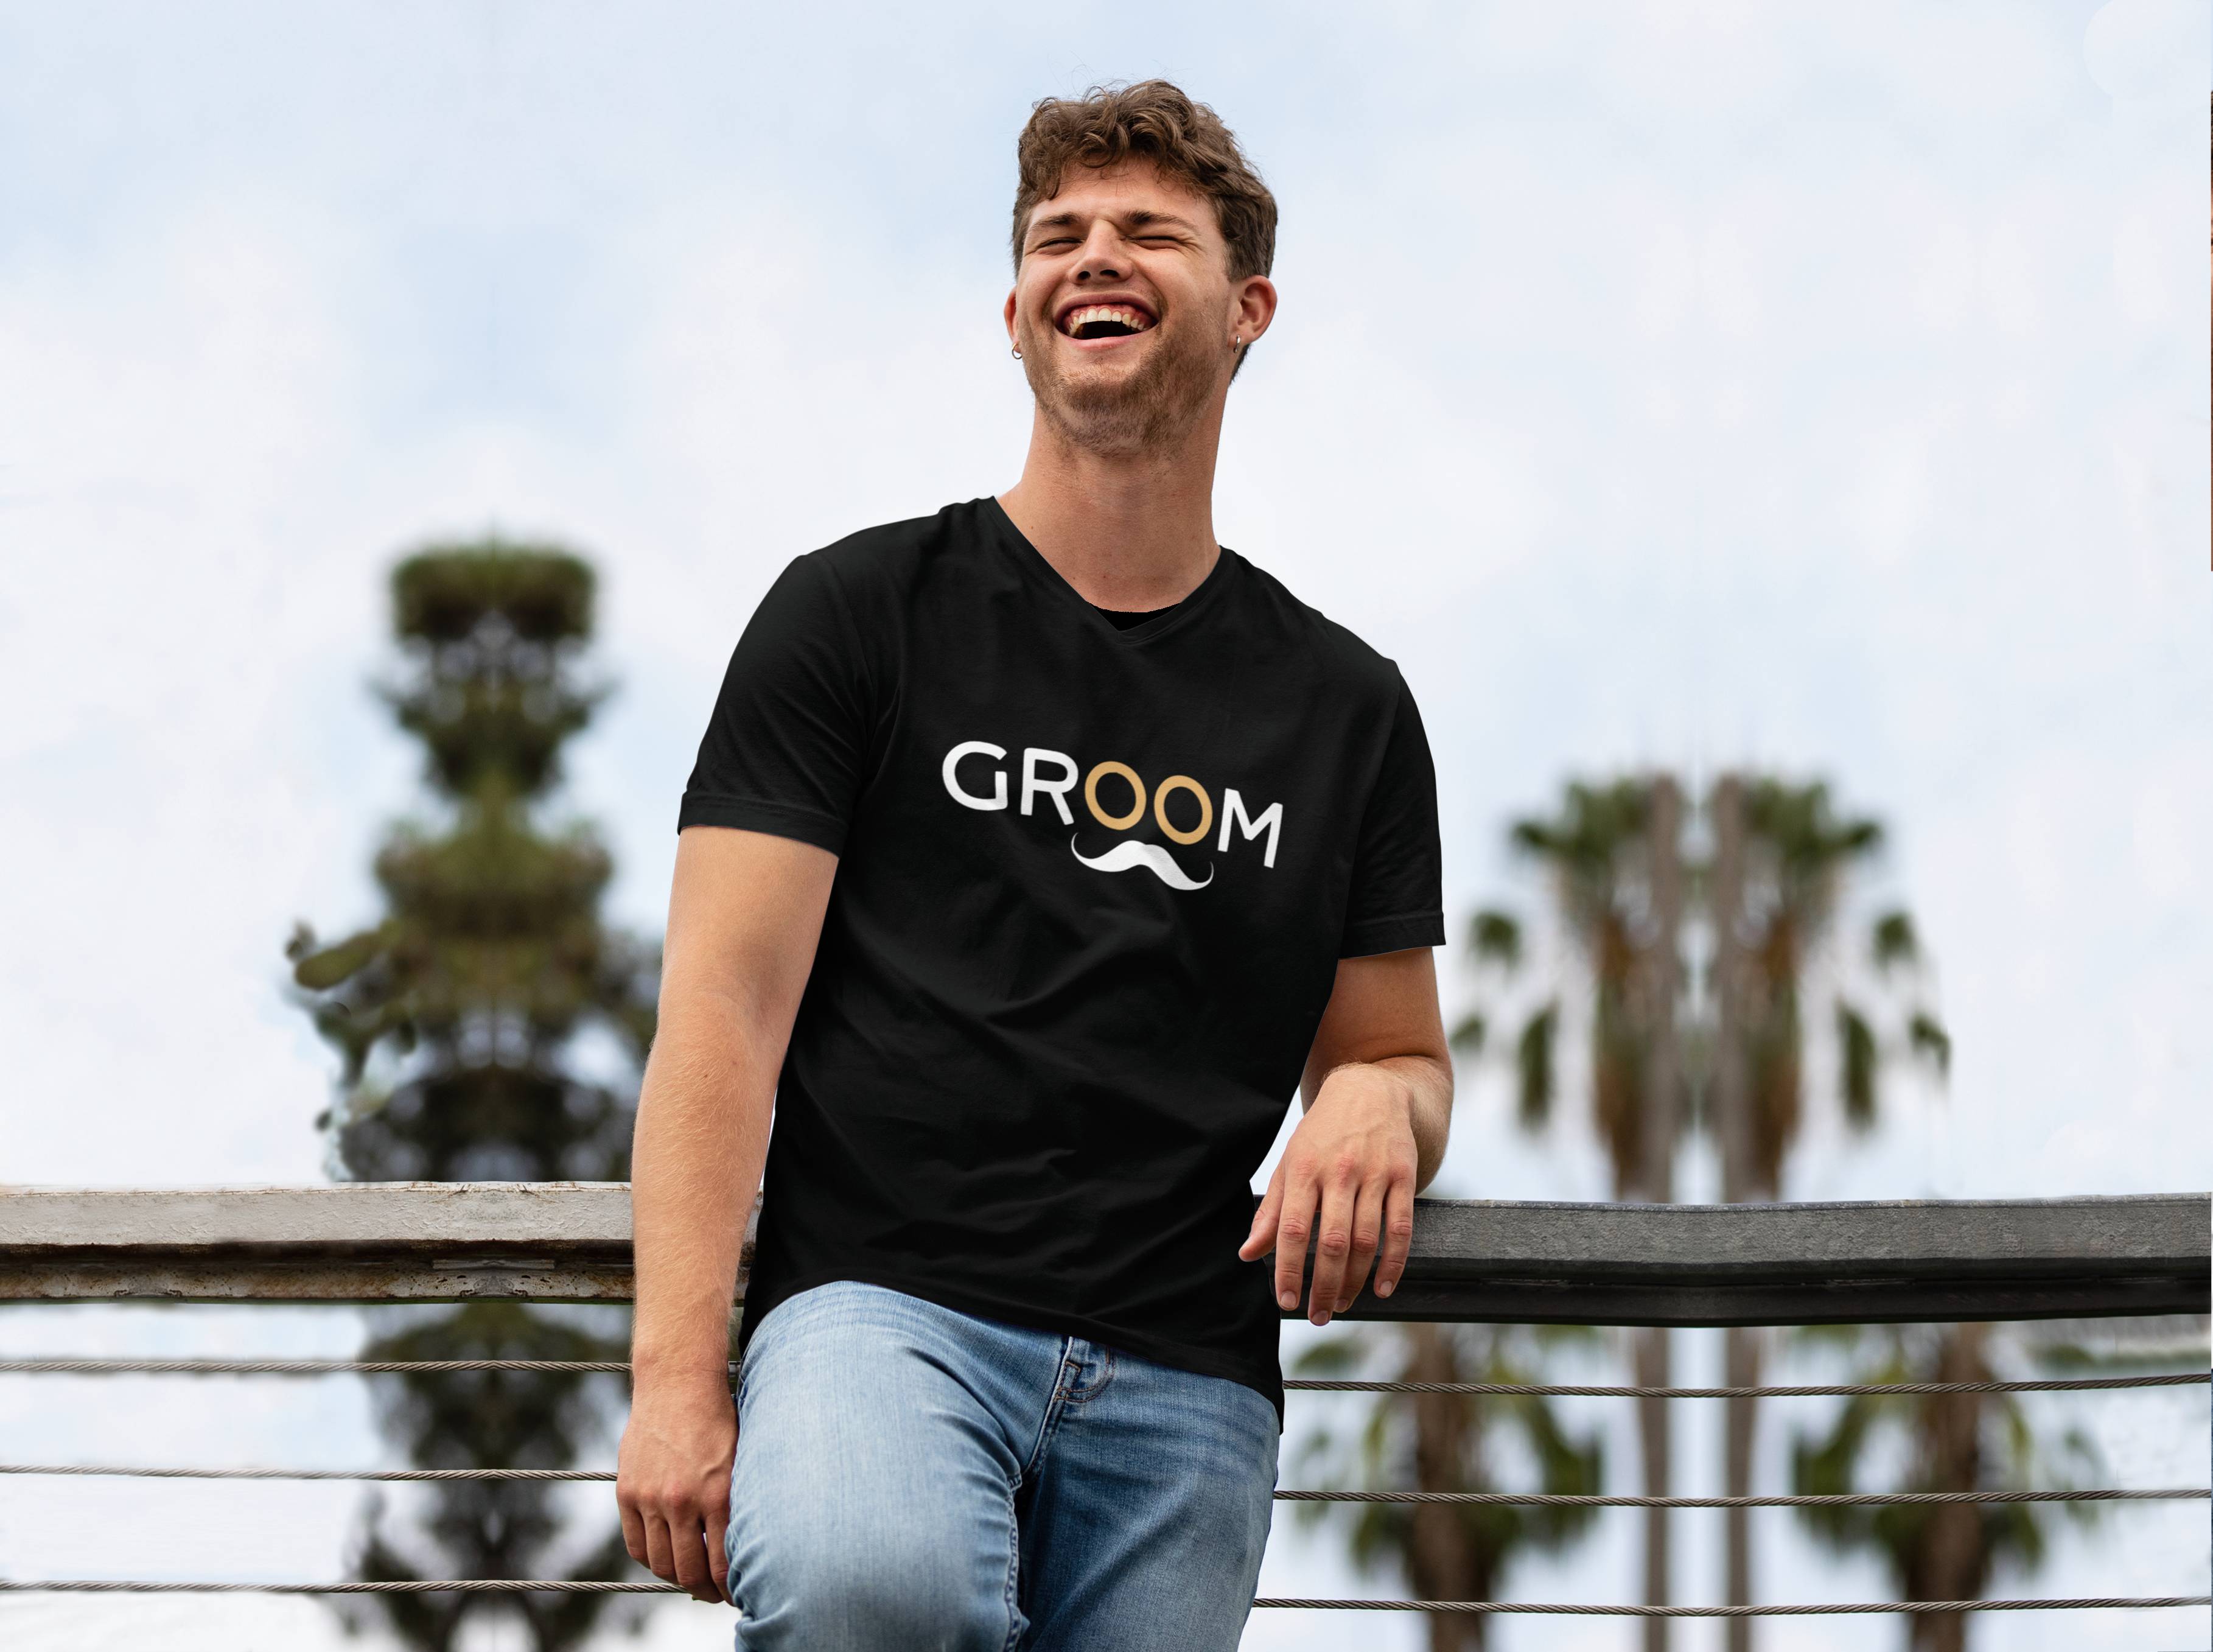 Personal Pánske tričko - Groom Farba: čierna, Veľkosť - dospelý: M